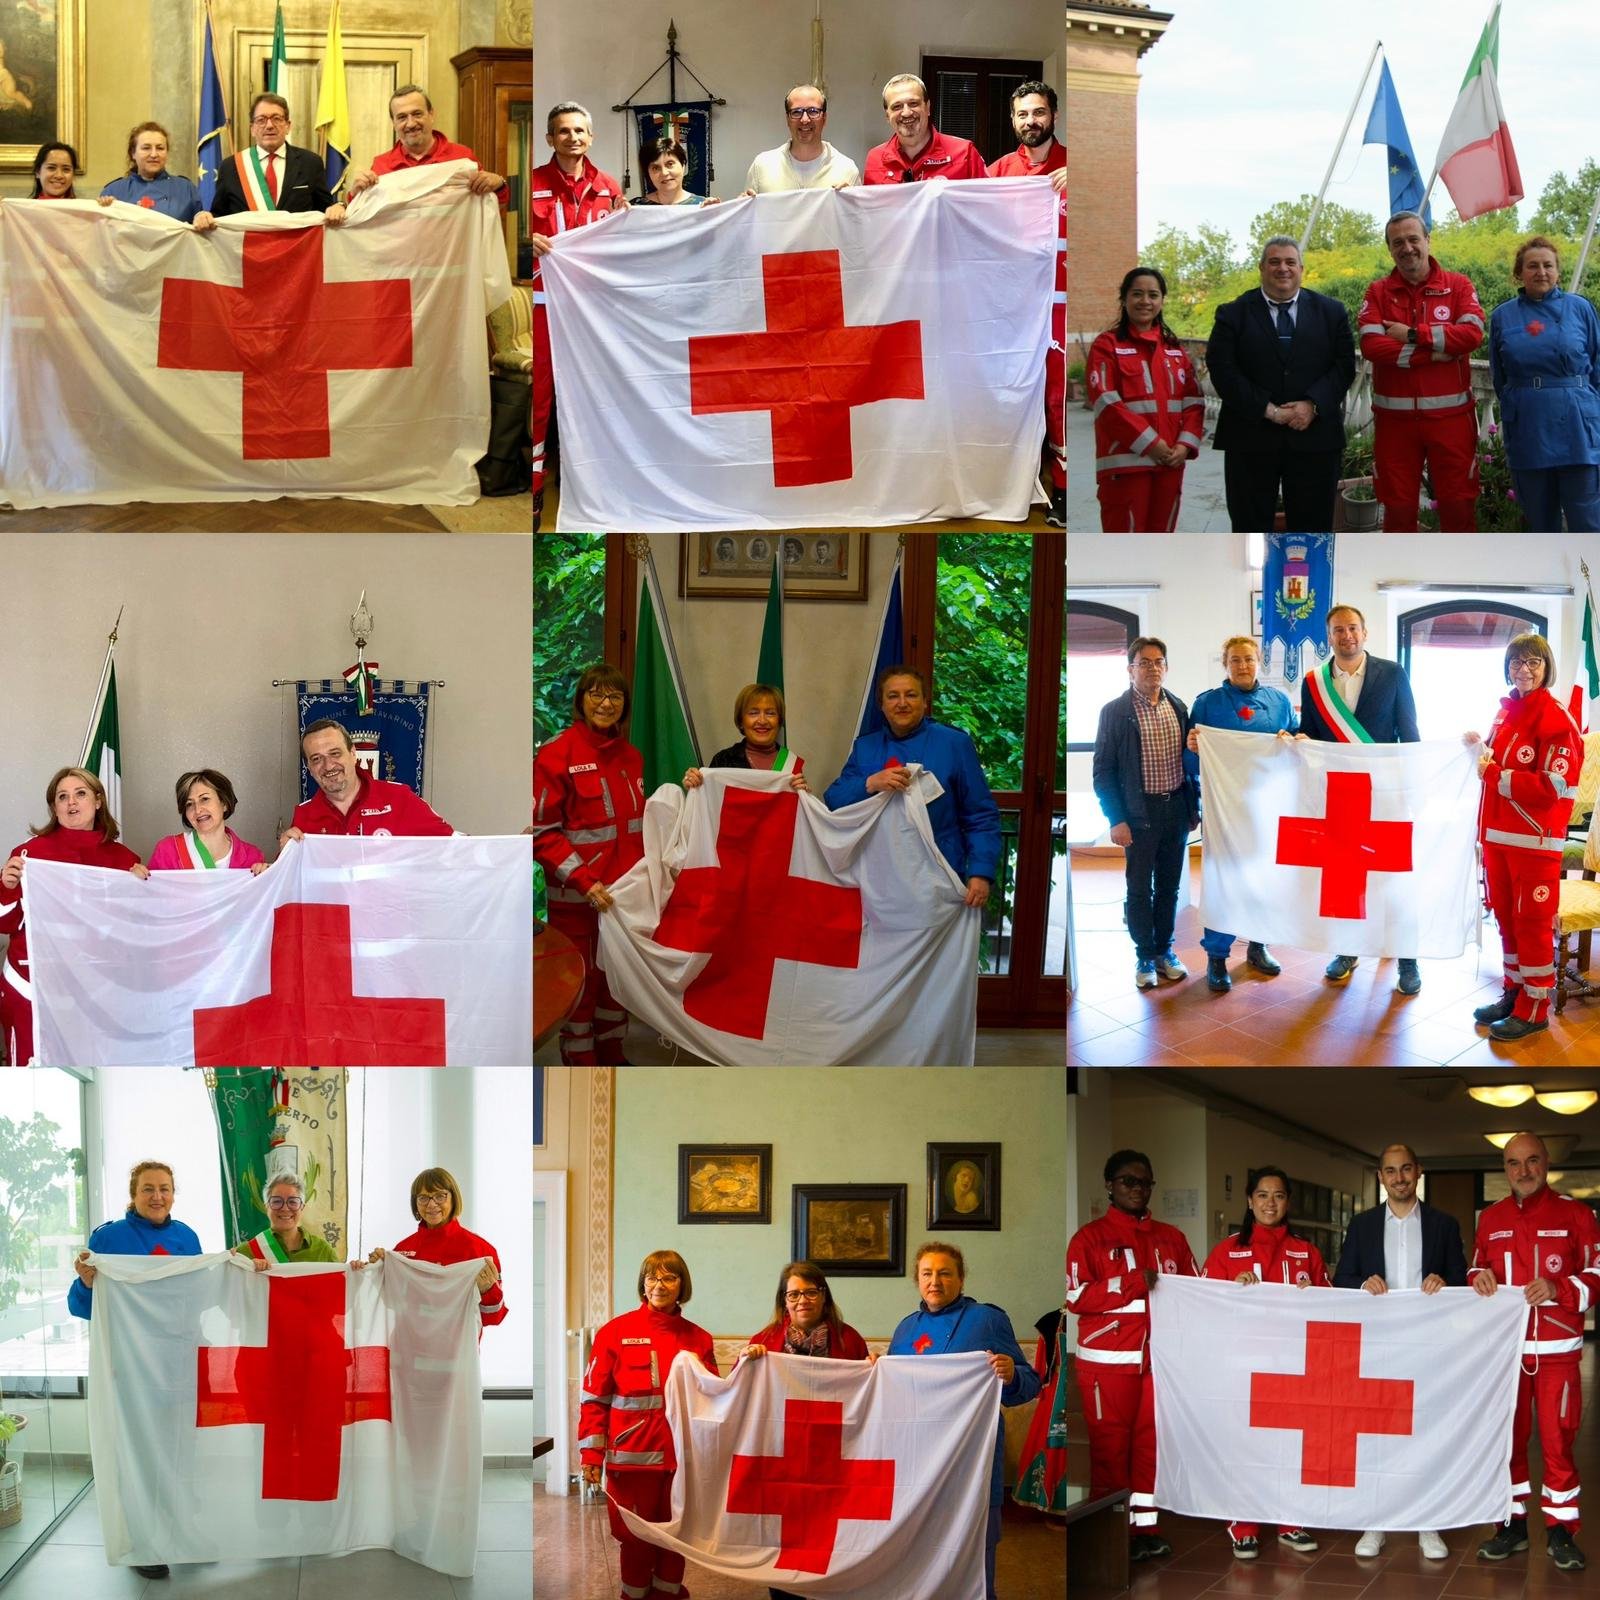 Croce Rossa, l’emblema di protezione consegnato anche ai comuni di Nonantola, Ravarino, Bastiglia e Bomporto